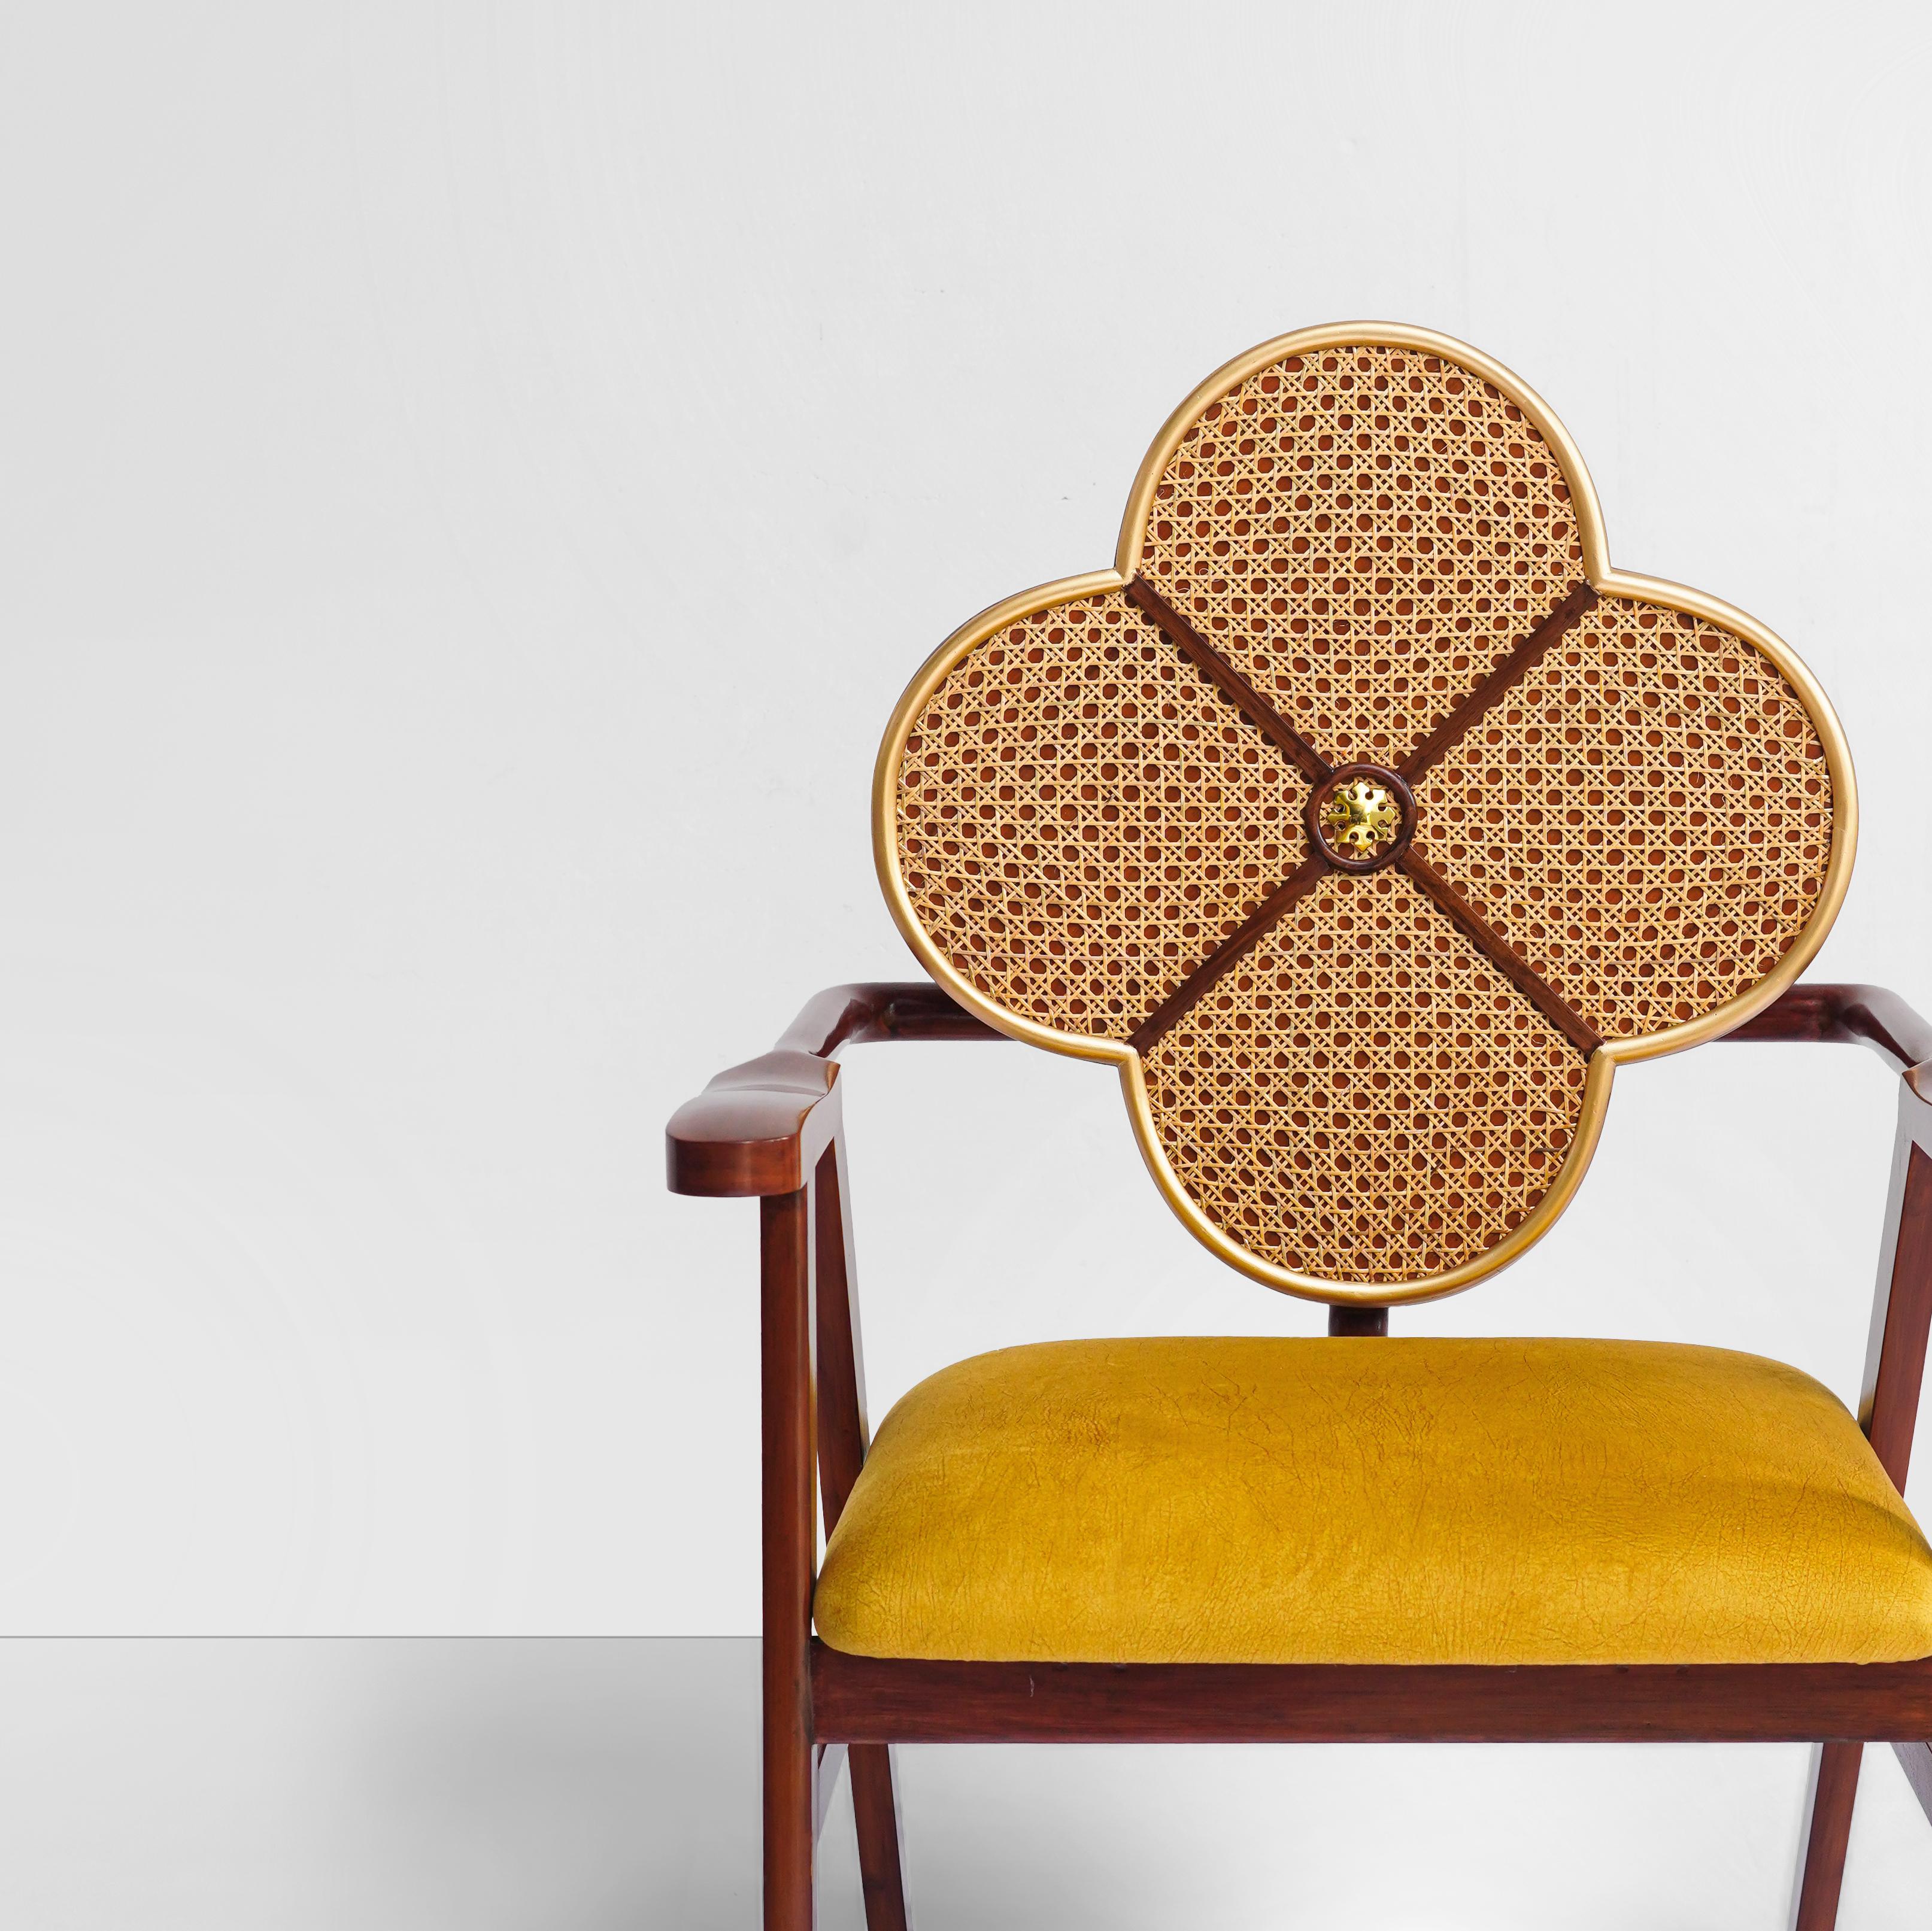 Rehaussez votre espace avec l'Elegance de l'Art Nouveau : La chaise Fleur

Plongez dans l'univers opulent de l'Art nouveau avec la chaise Fleur, un véritable chef-d'œuvre où la grâce de la nature rencontre un design intemporel. Fabriquée à la main à